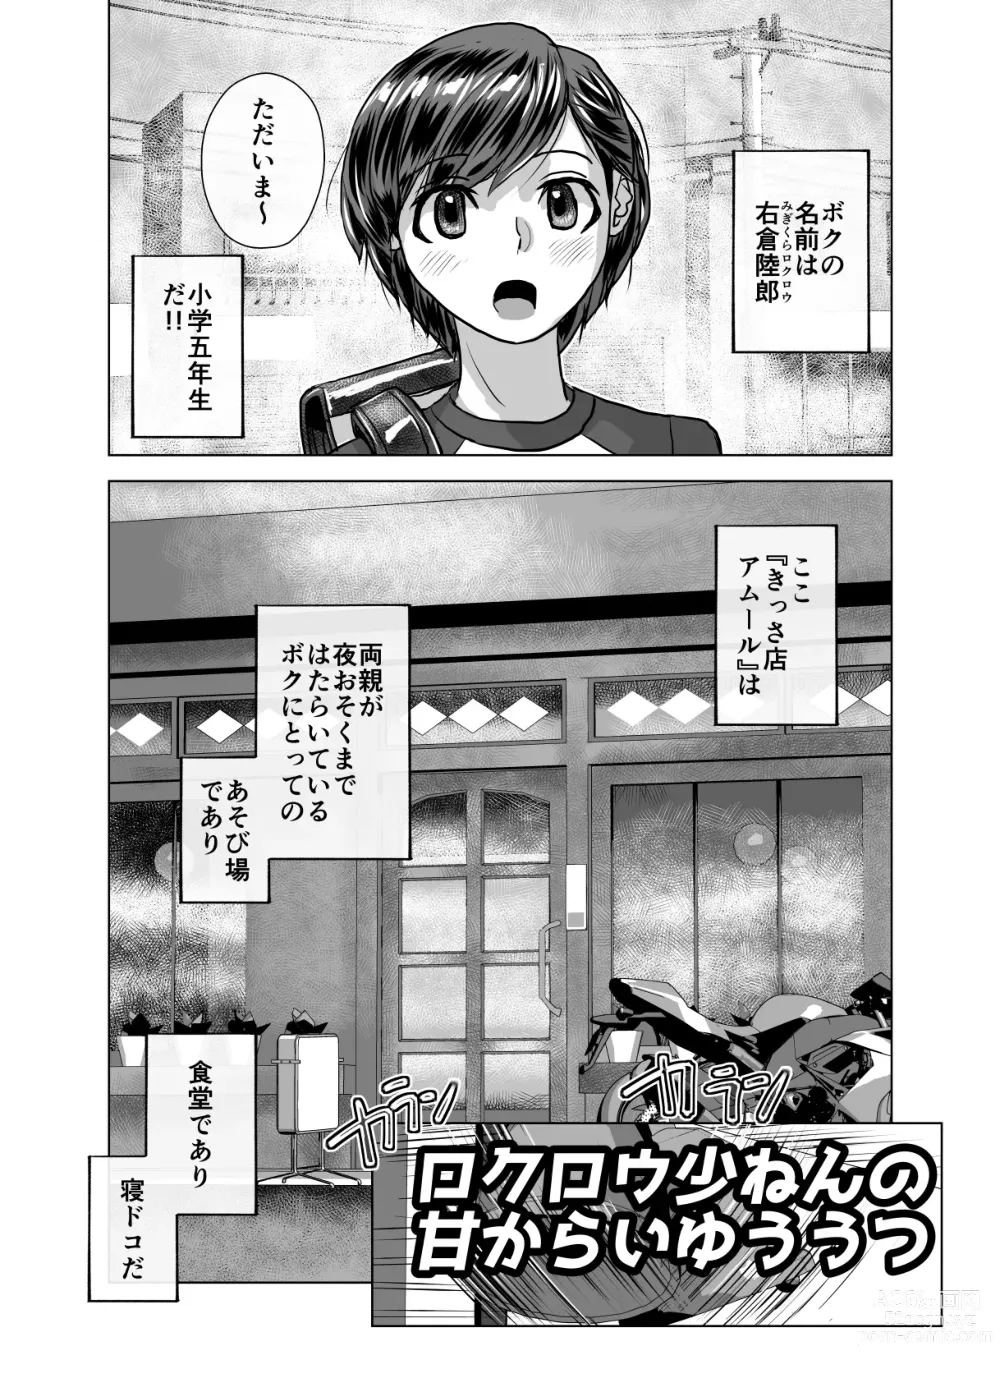 Page 613 of doujinshi BEYOND ~ Aisubeki Kanata no Hitobito 1~10